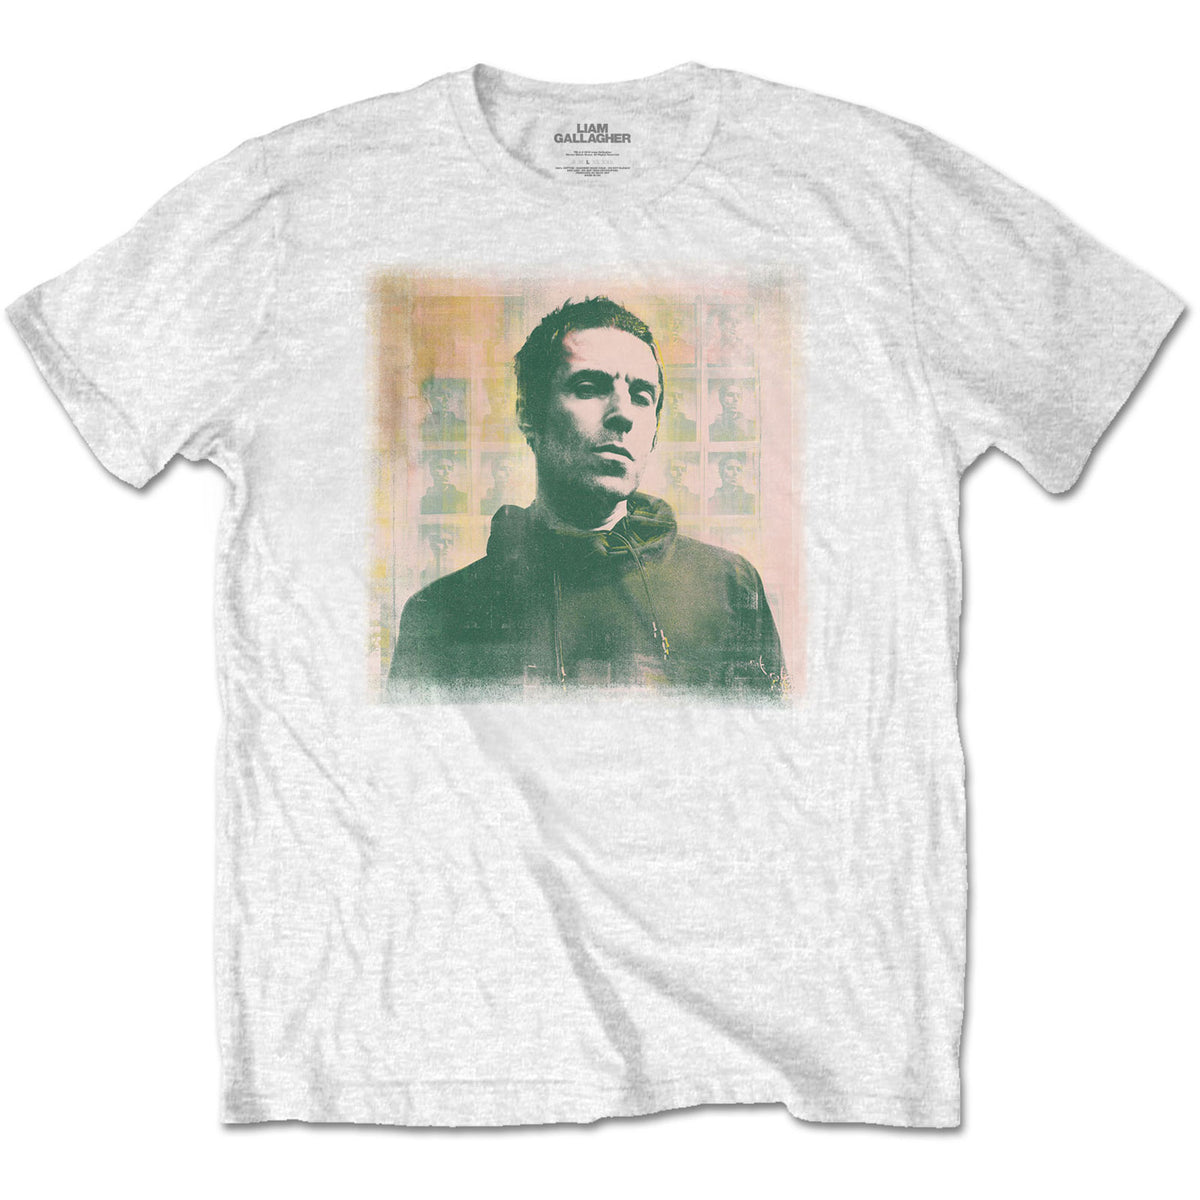 Liam Gallagher T-shirt adulte - Monochrome - Blanc Design sous licence officielle - Expédition dans le monde entier